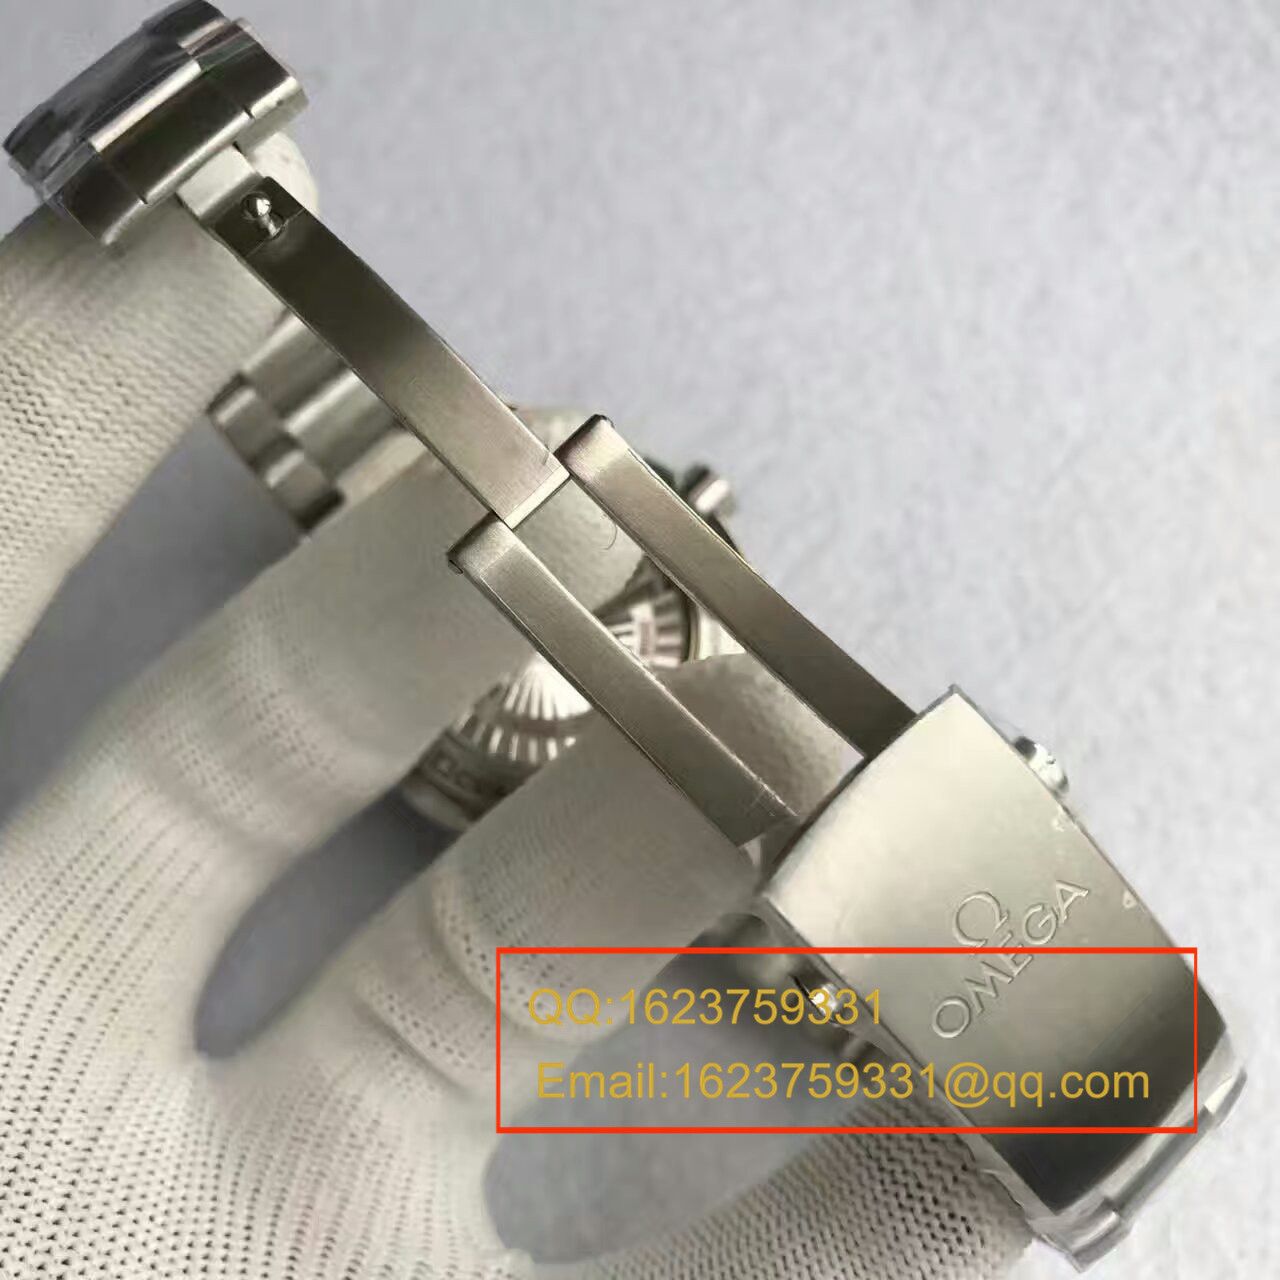 【KW厂一比一超A高仿】欧米茄海马系列231.12.42.21.01.002 男士机械手表 《钢带款》 